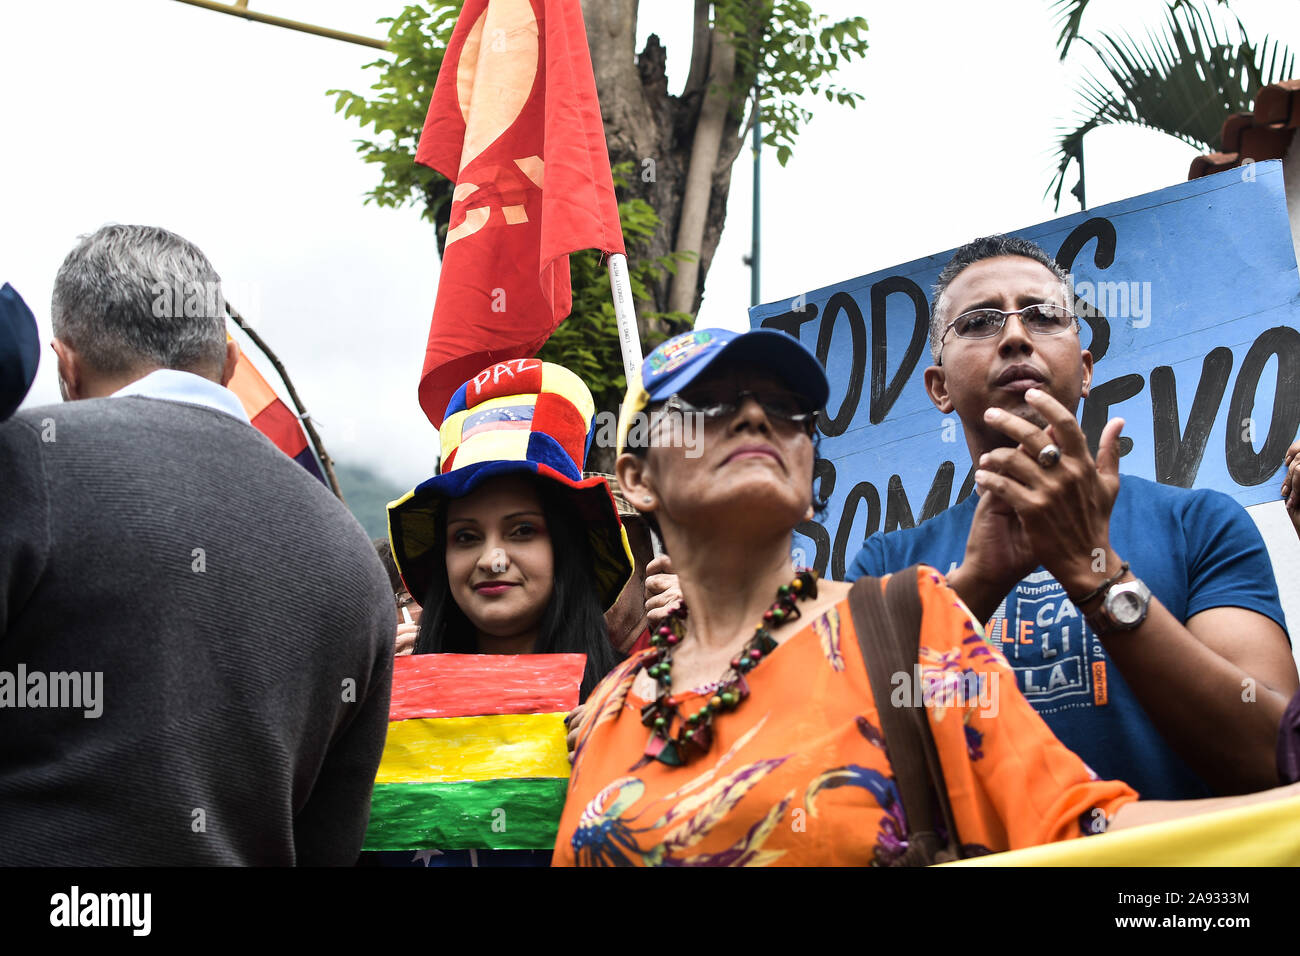 Sostenitore applaudire i tifosi durante la protesta.i sostenitori dei movimenti sociali e il venezuelano della gioventù comunista protesta a sostegno dell ex presidente Evo Morales di fronte all'ambasciata boliviana. Il presidente del paese si è dimesso dopo una forte protesta contro la sua rielezione e per aver rifiutato di condurre una verifica dei voti. Foto Stock